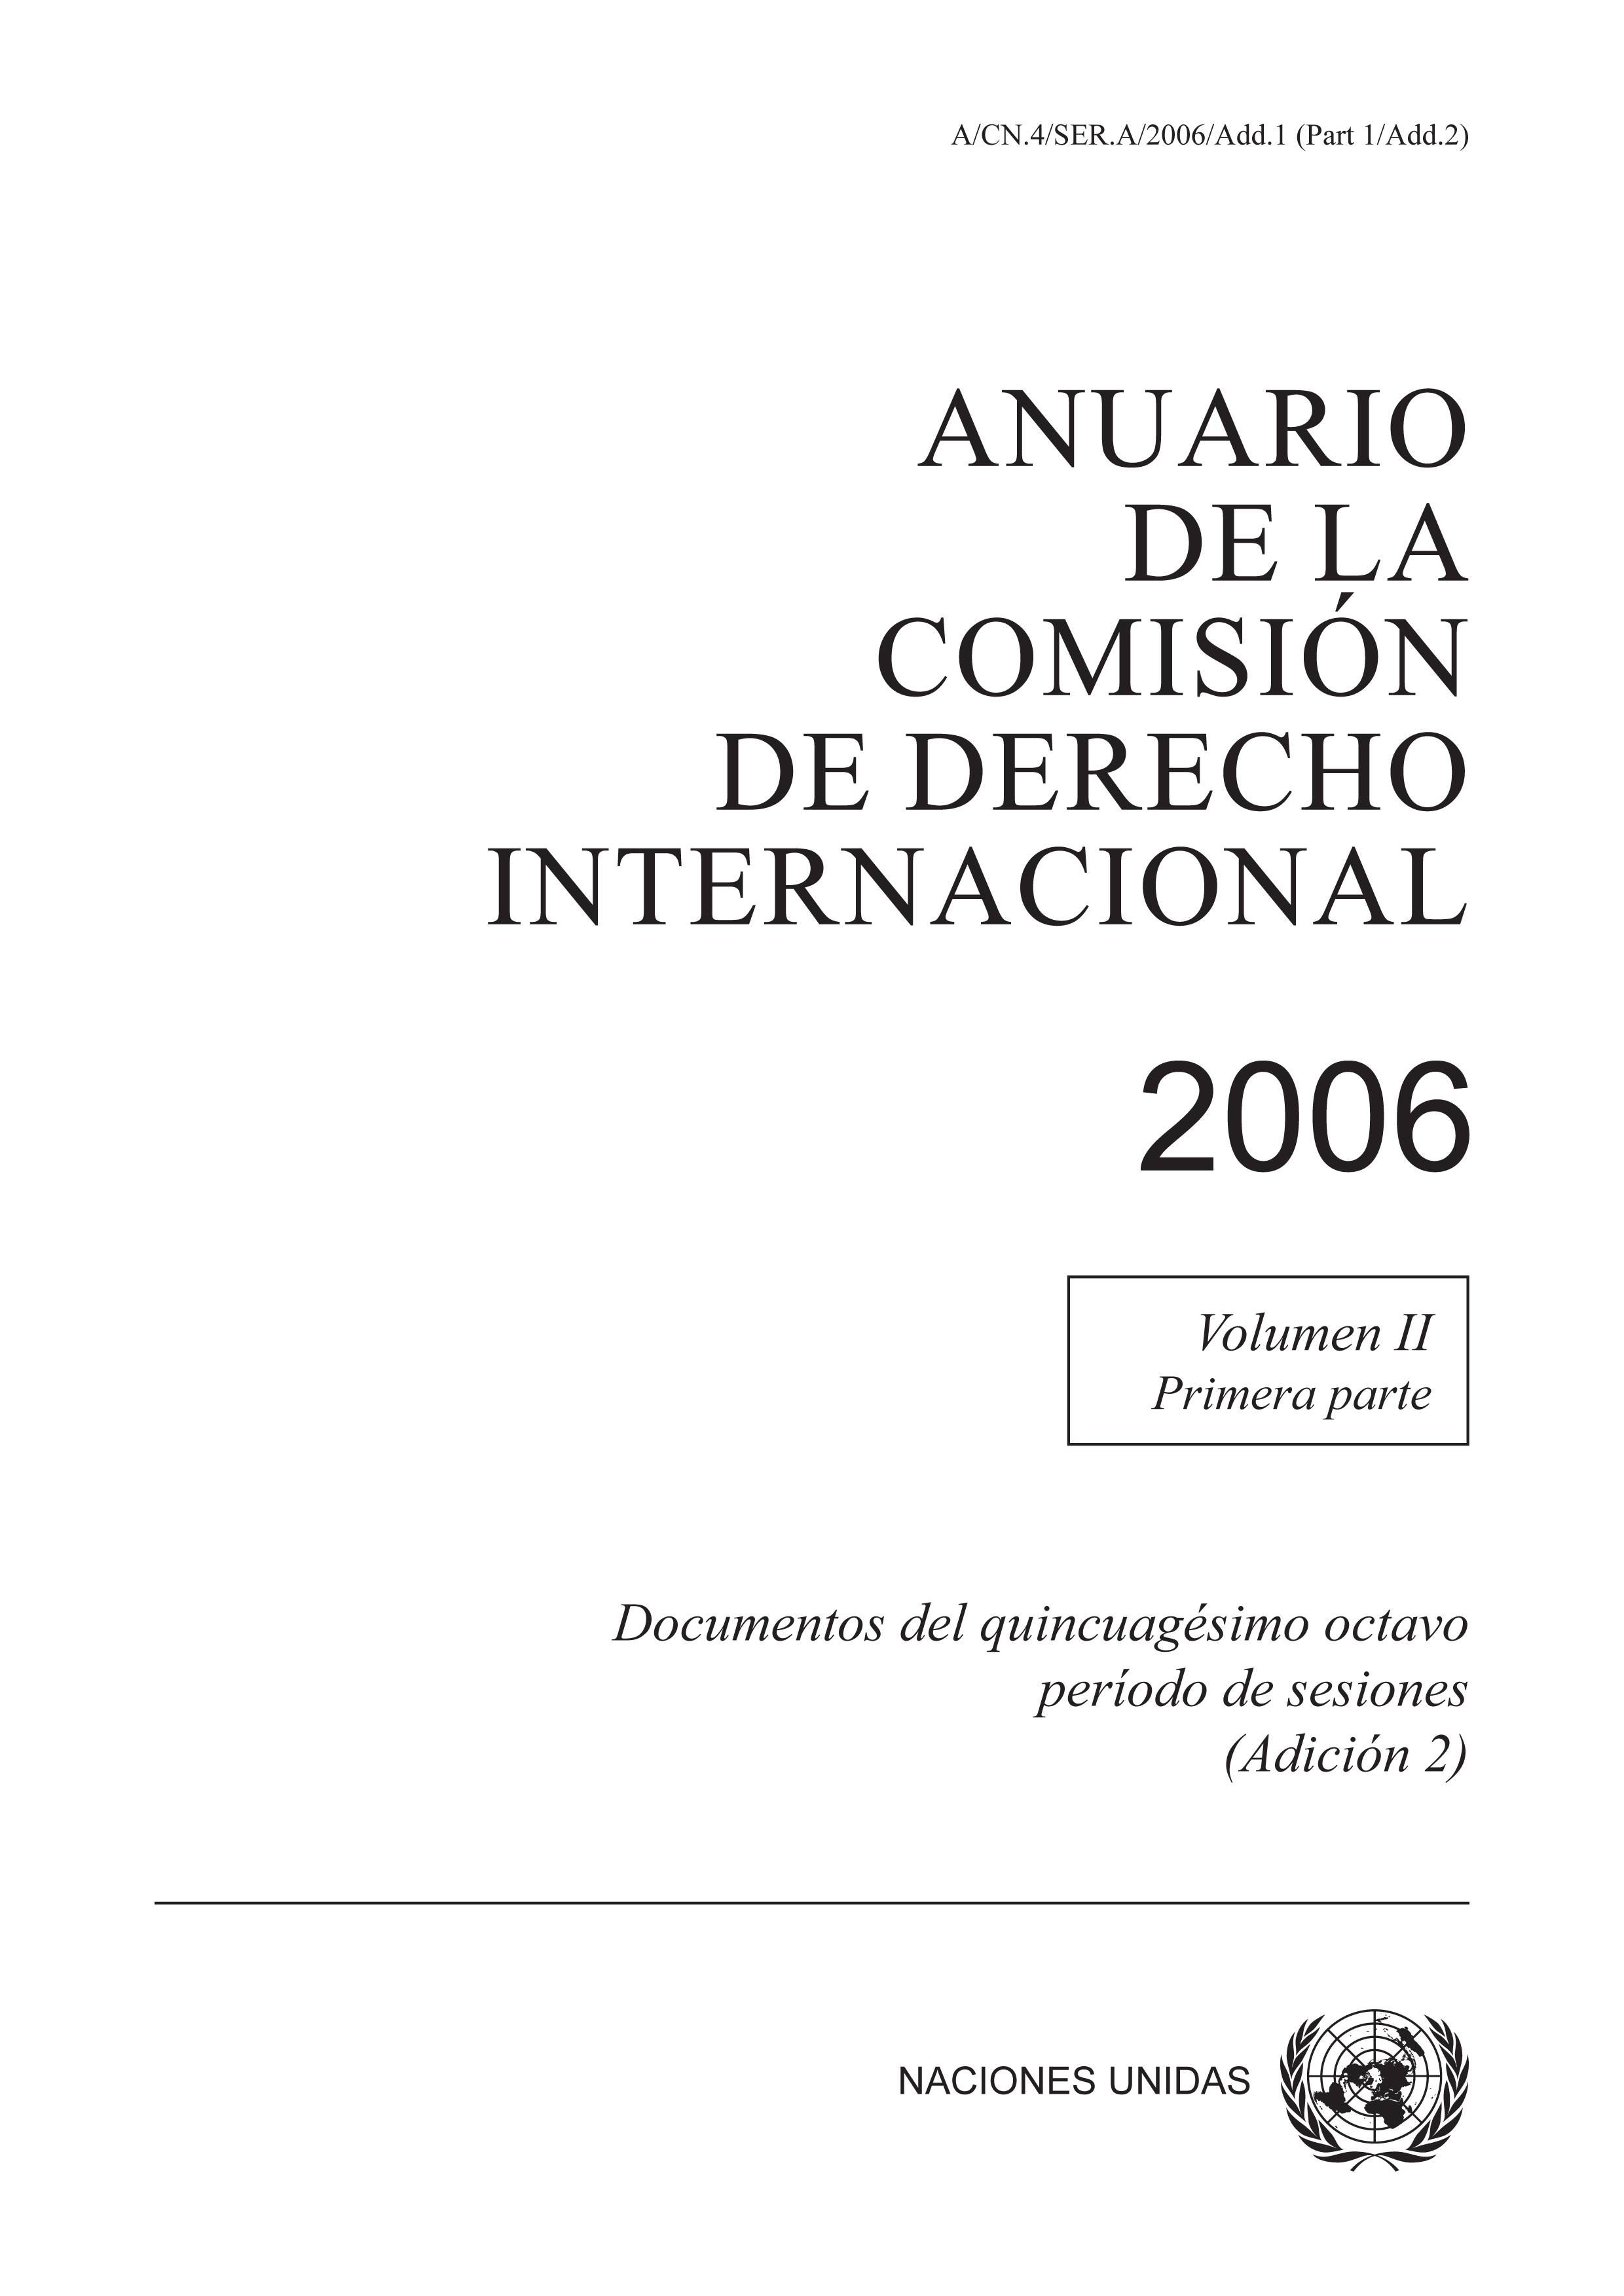 image of Anuario de la Comisión de Derecho Internacional 2006, Vol. II, Parte 1 (Adición 2)